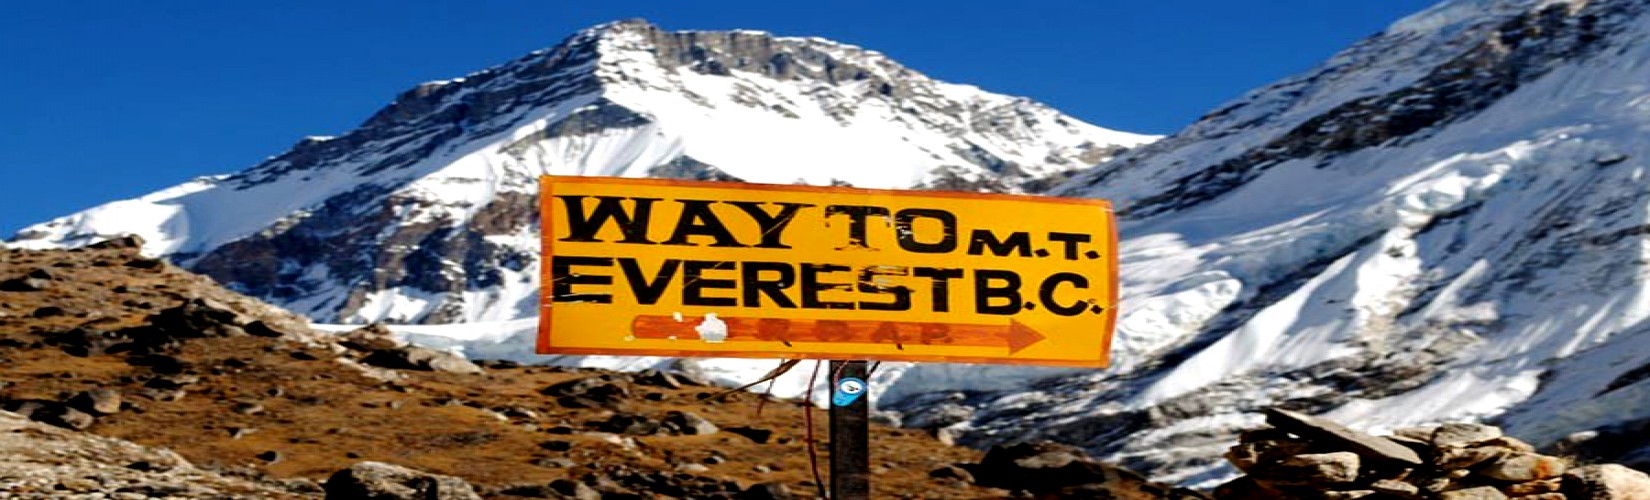 Short Everest Base Camp Trek | Trekking in Nepal | Nepal Trekking Package | Everest Base Camp Trek 